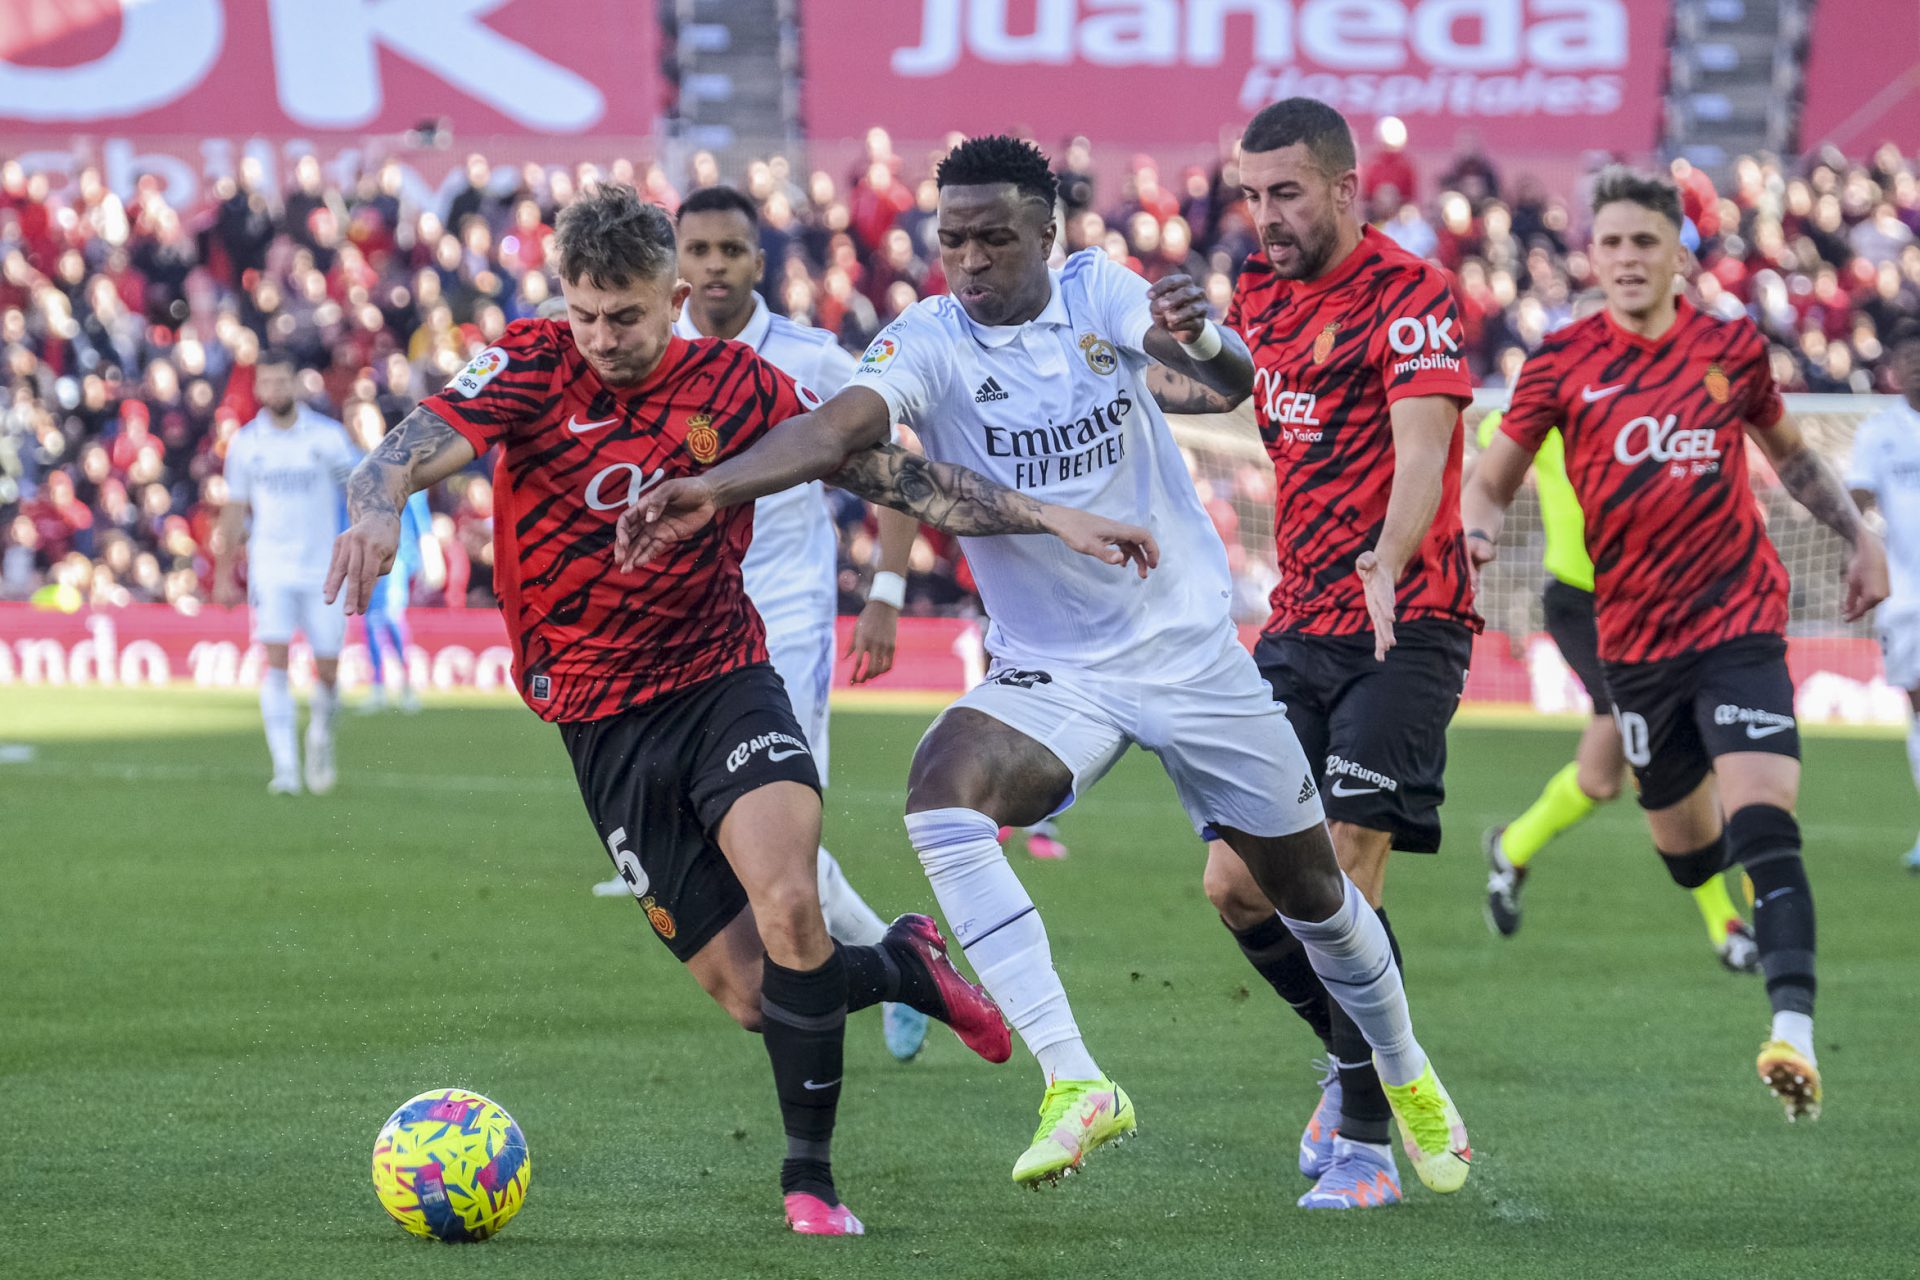 El jugador del Real Madrid Vinicius Jr en acción contra el jugador del Mallorca Pablo Maffeo en el estadio Son Moix, donde el jugador brasileño sufrió insultos racistas.